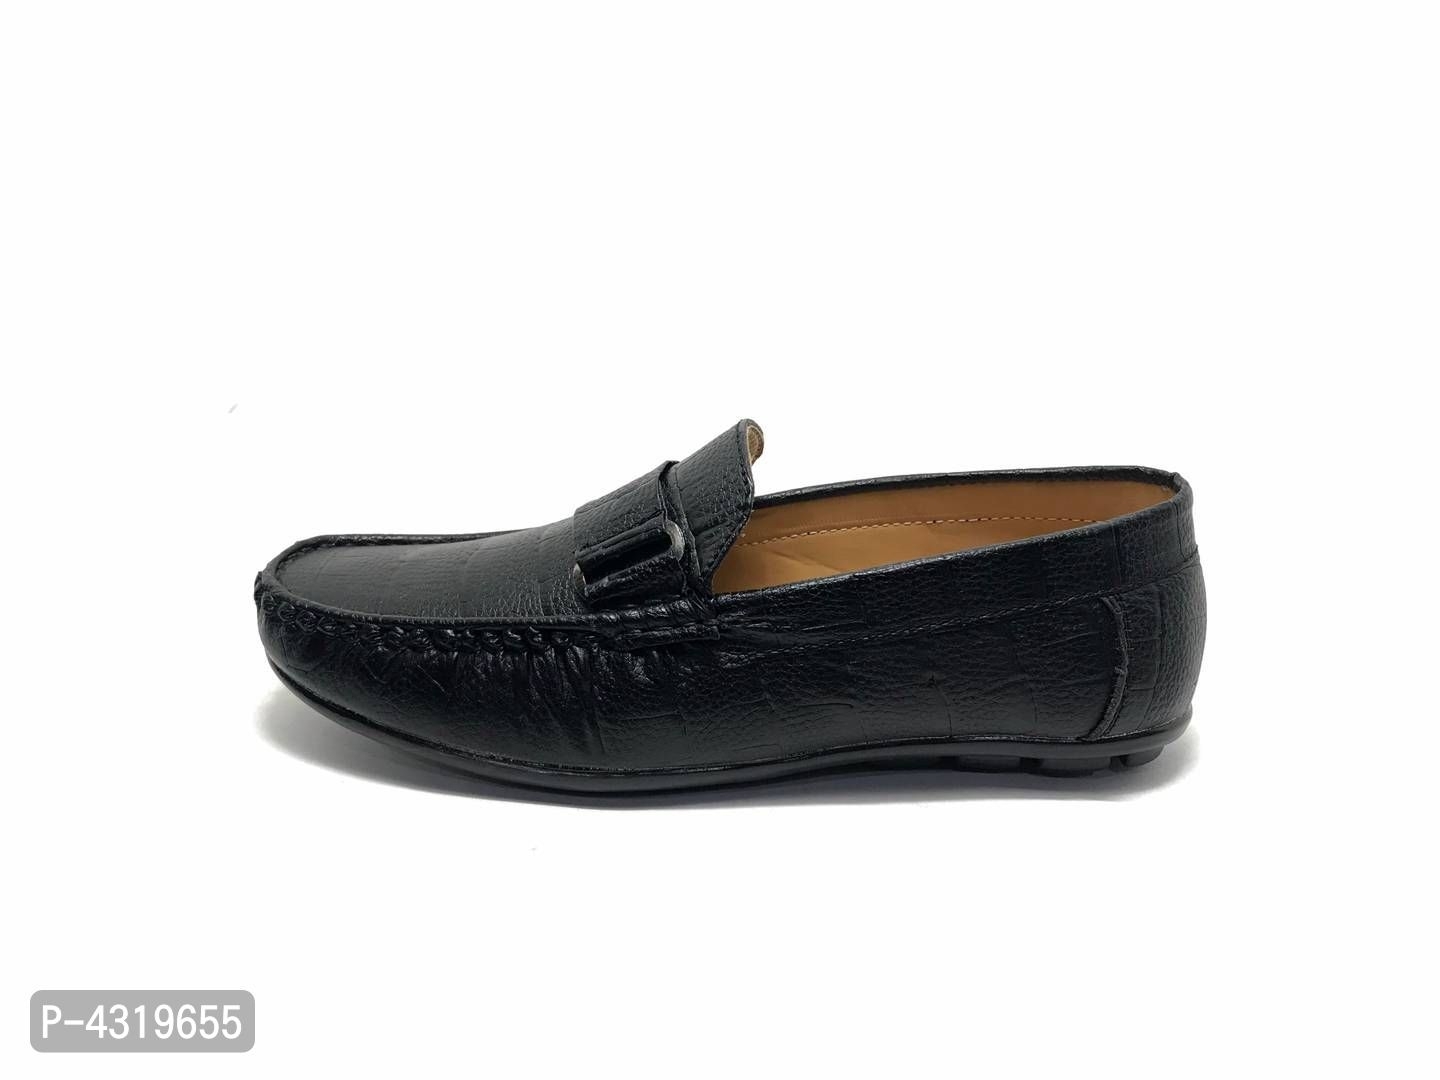 Elite Black Synthetic Solid Loafers For Men - Black, 6UK